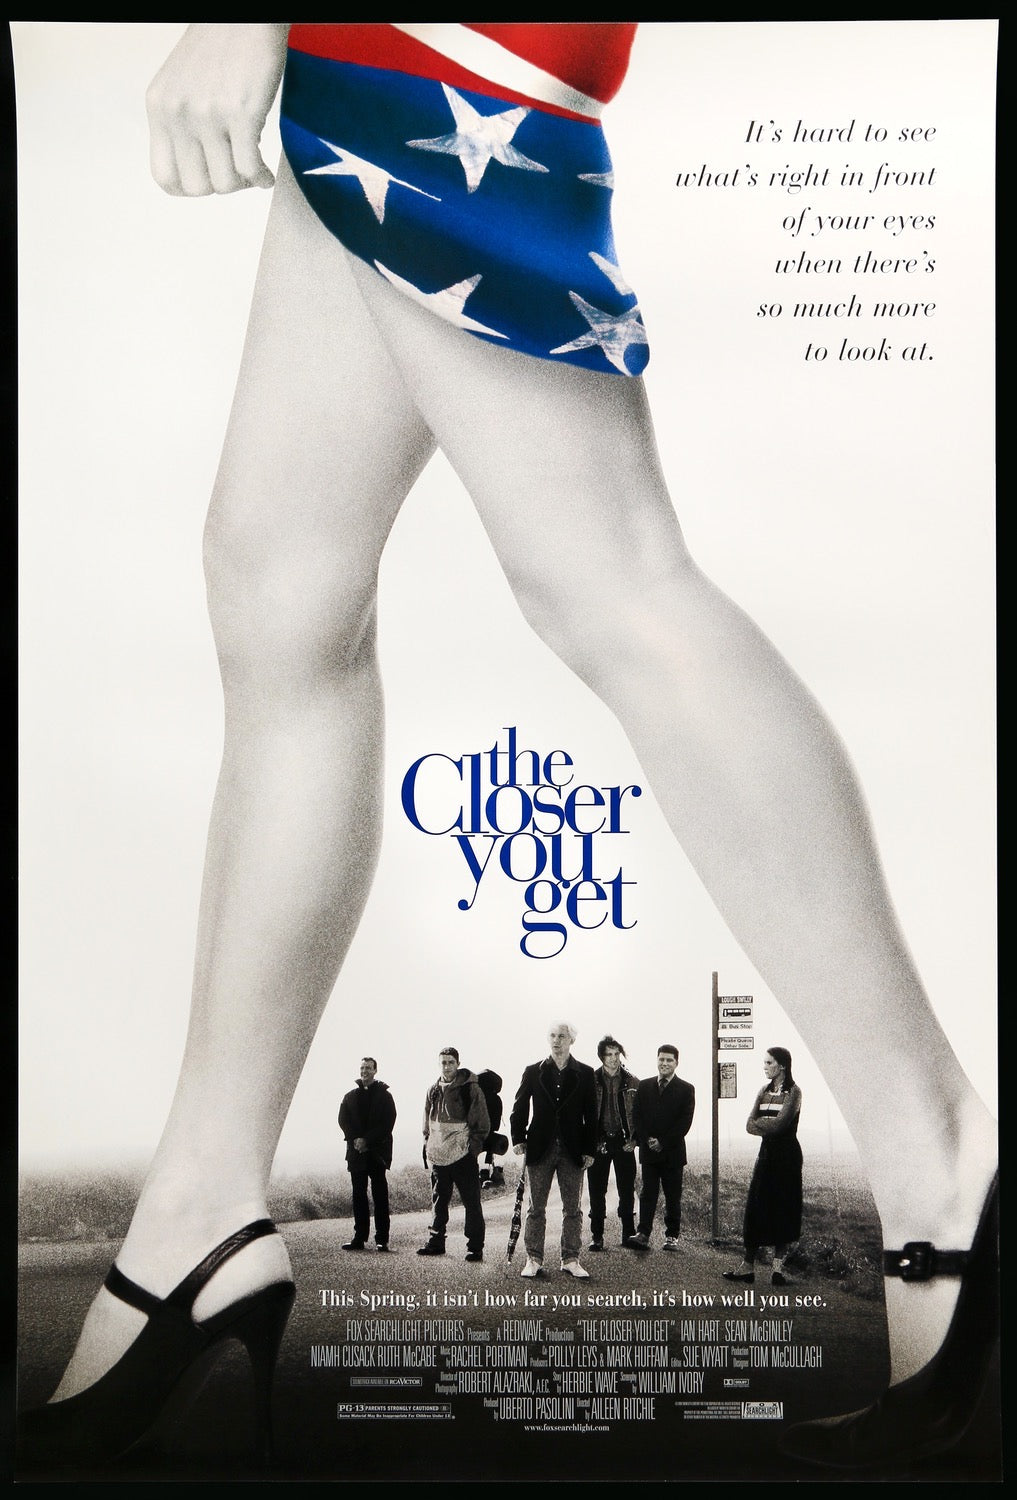 Closer You Get (2000) original movie poster for sale at Original Film Art